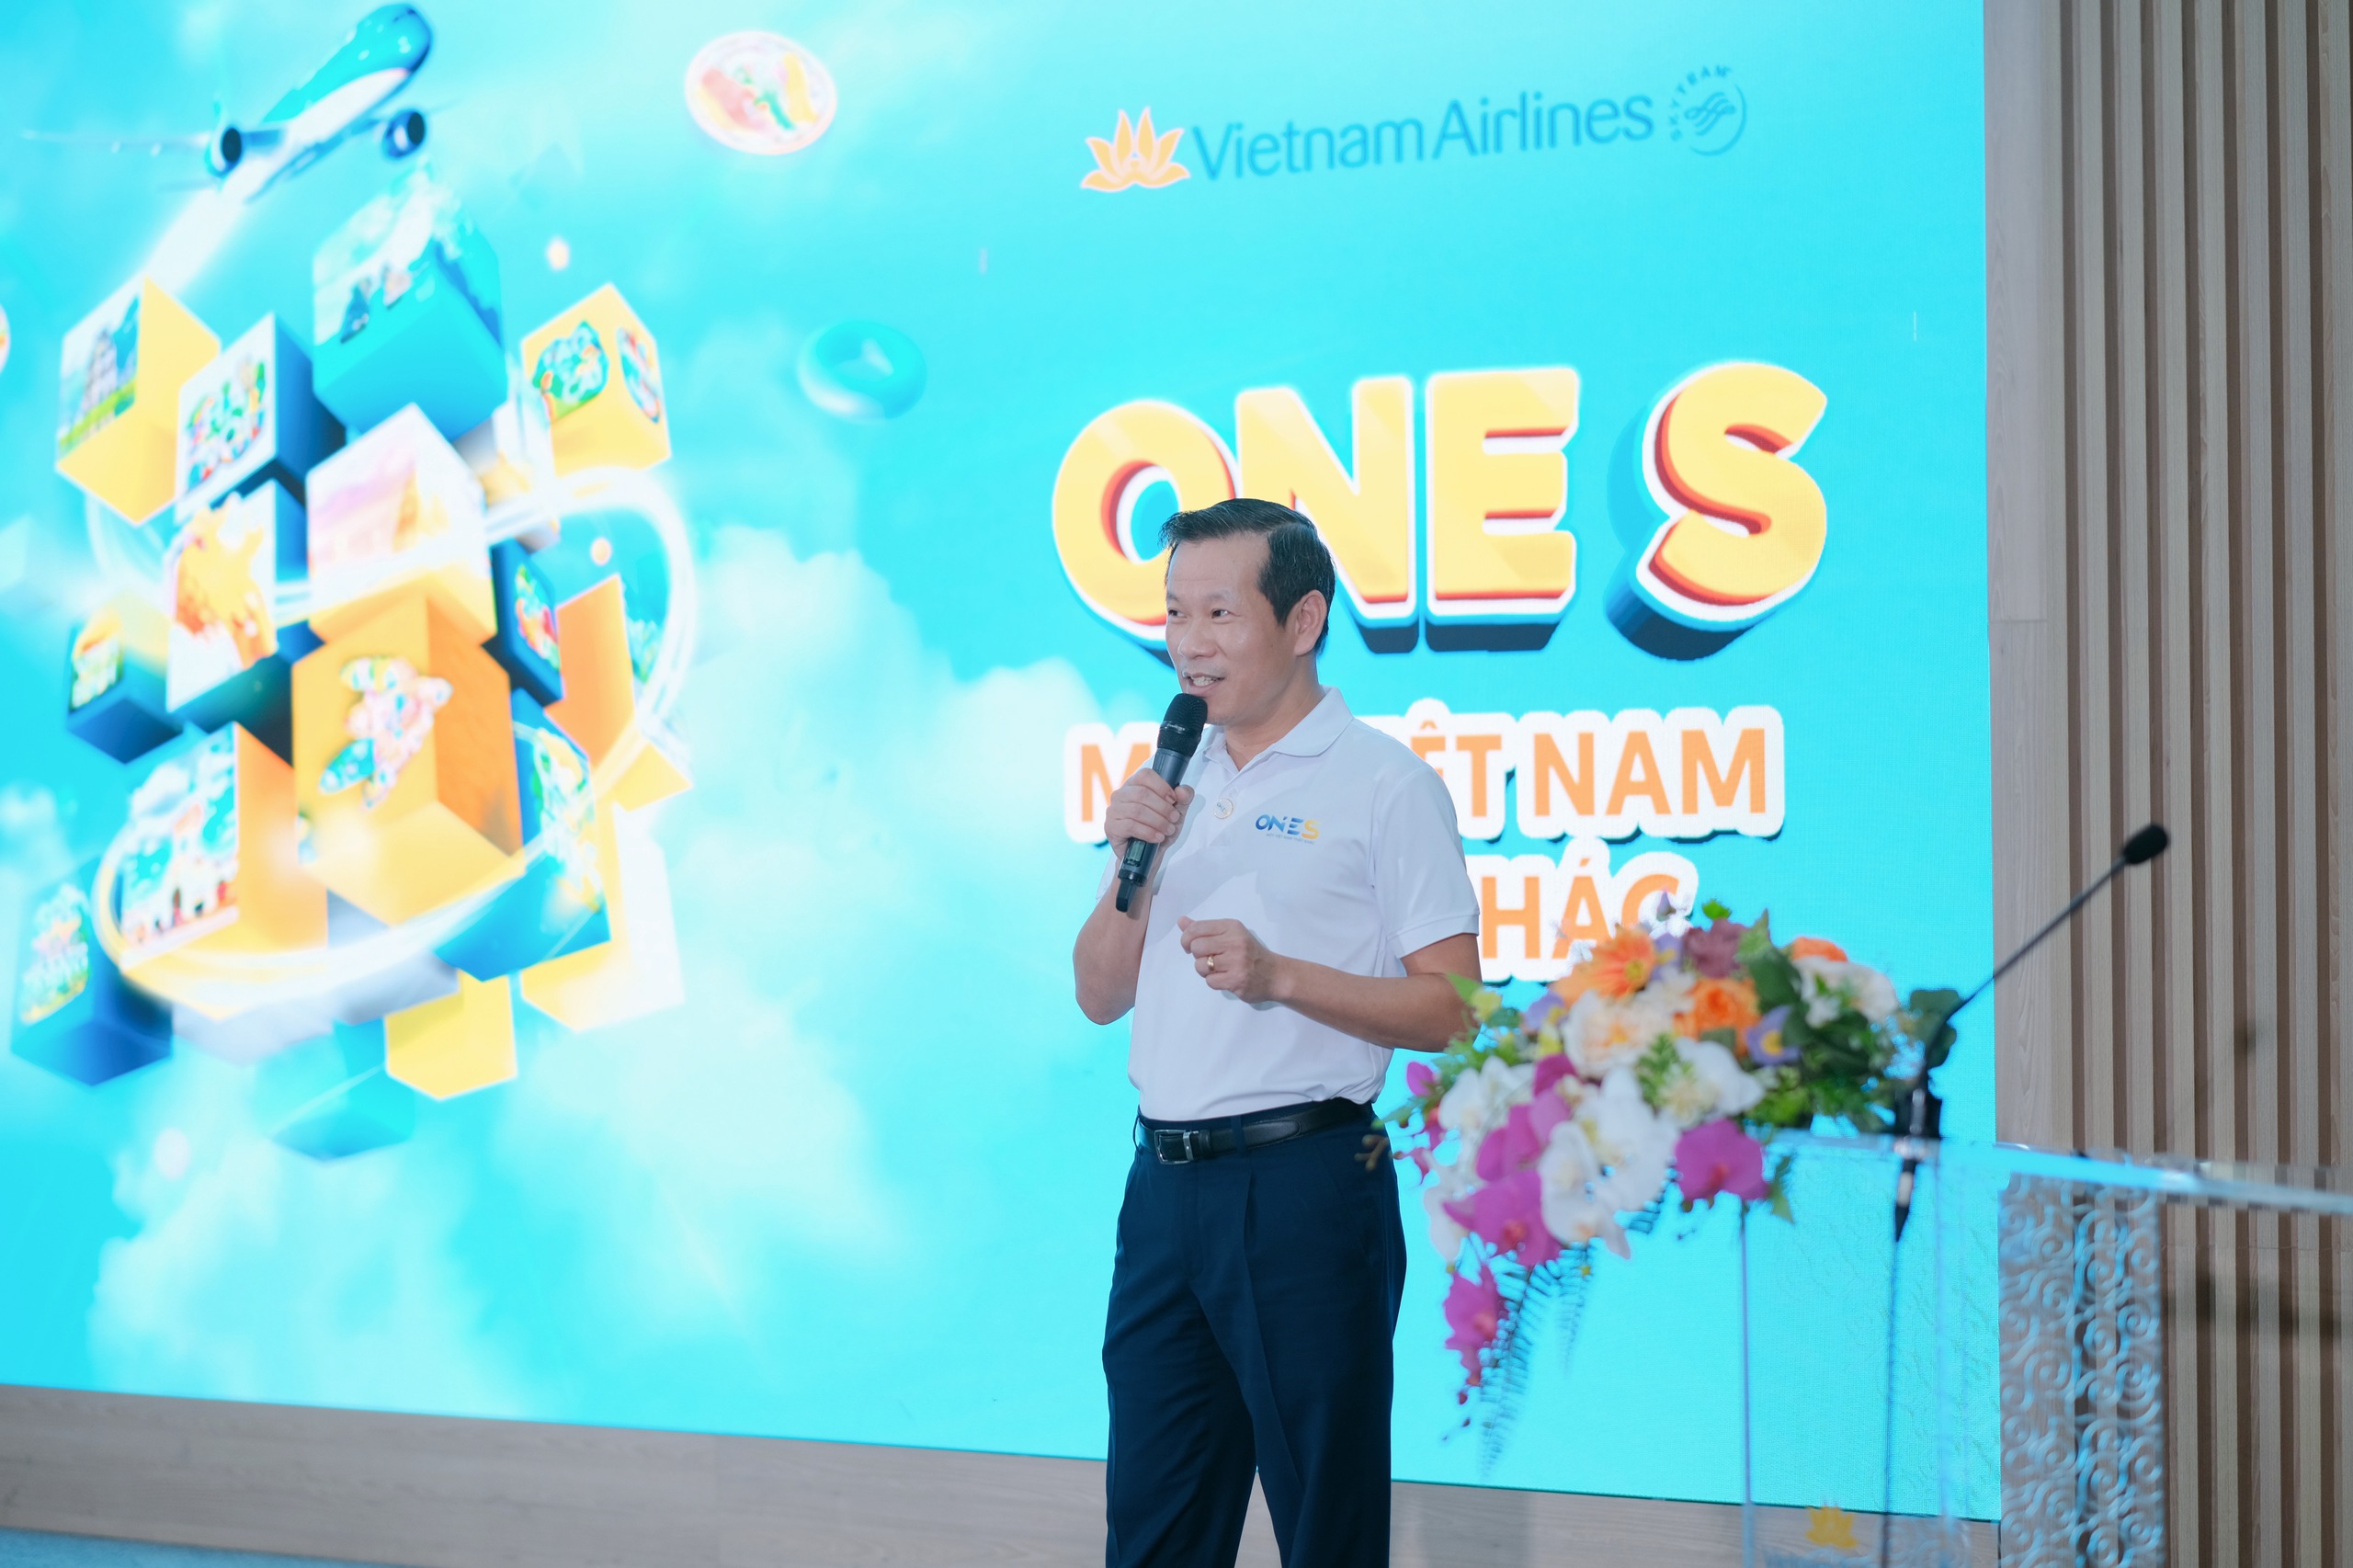 ベトナム航空は、TV360、VTVCab、Momo と協力して、One S インタラクティブ ゲームを開発しました - 写真 2。